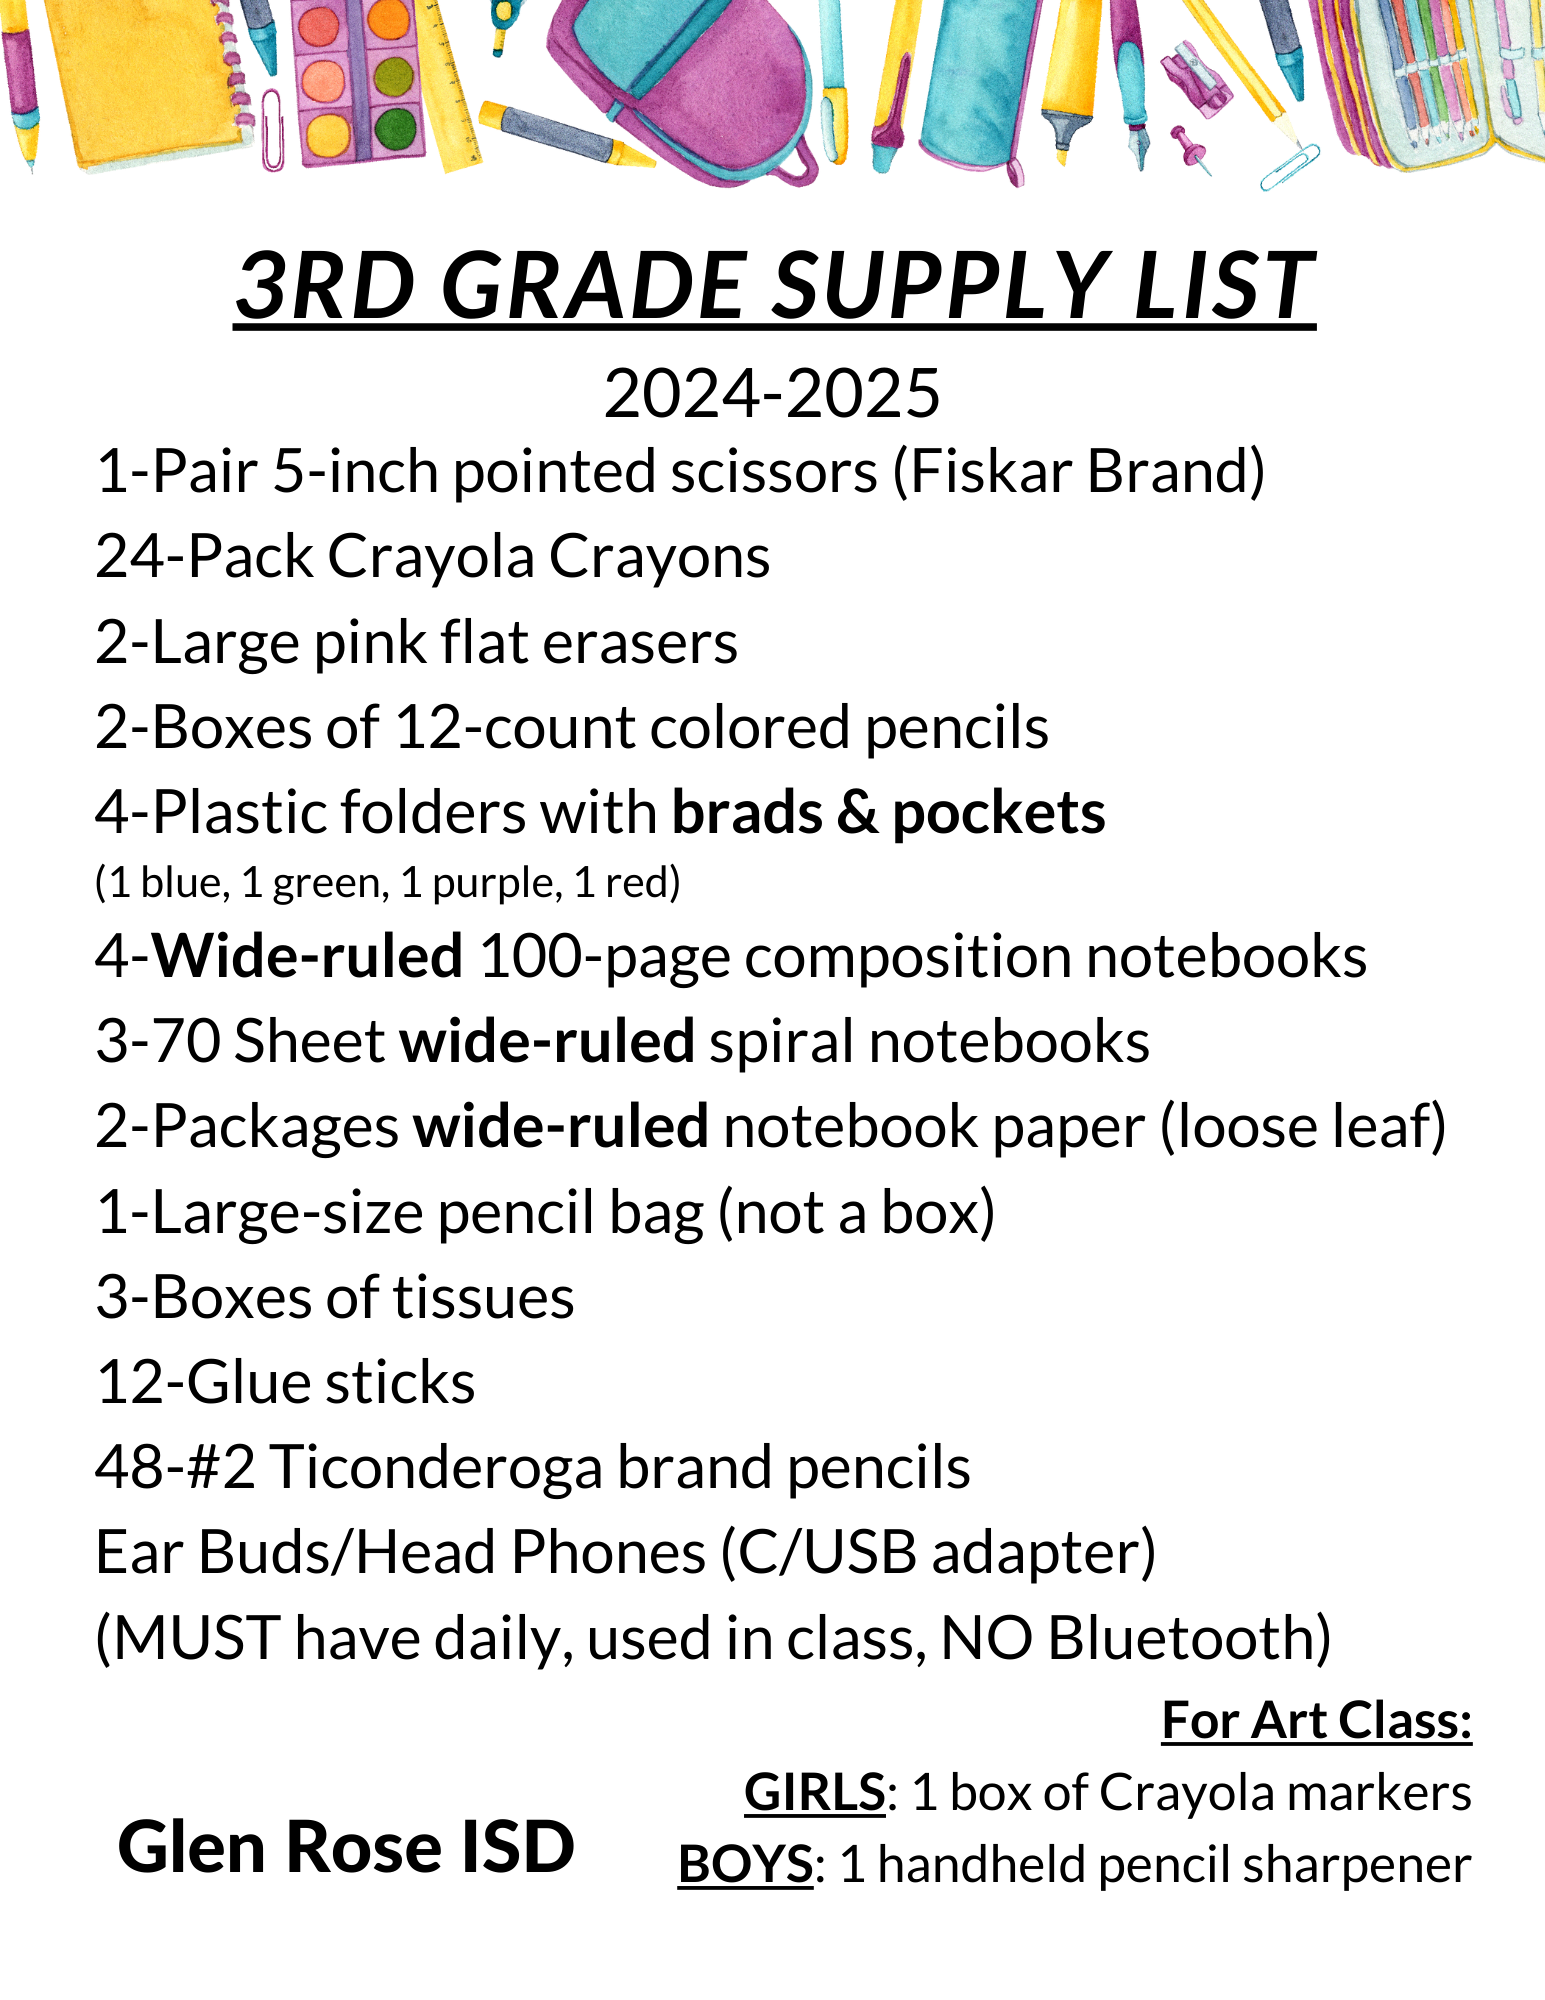 3rd grade school supplies